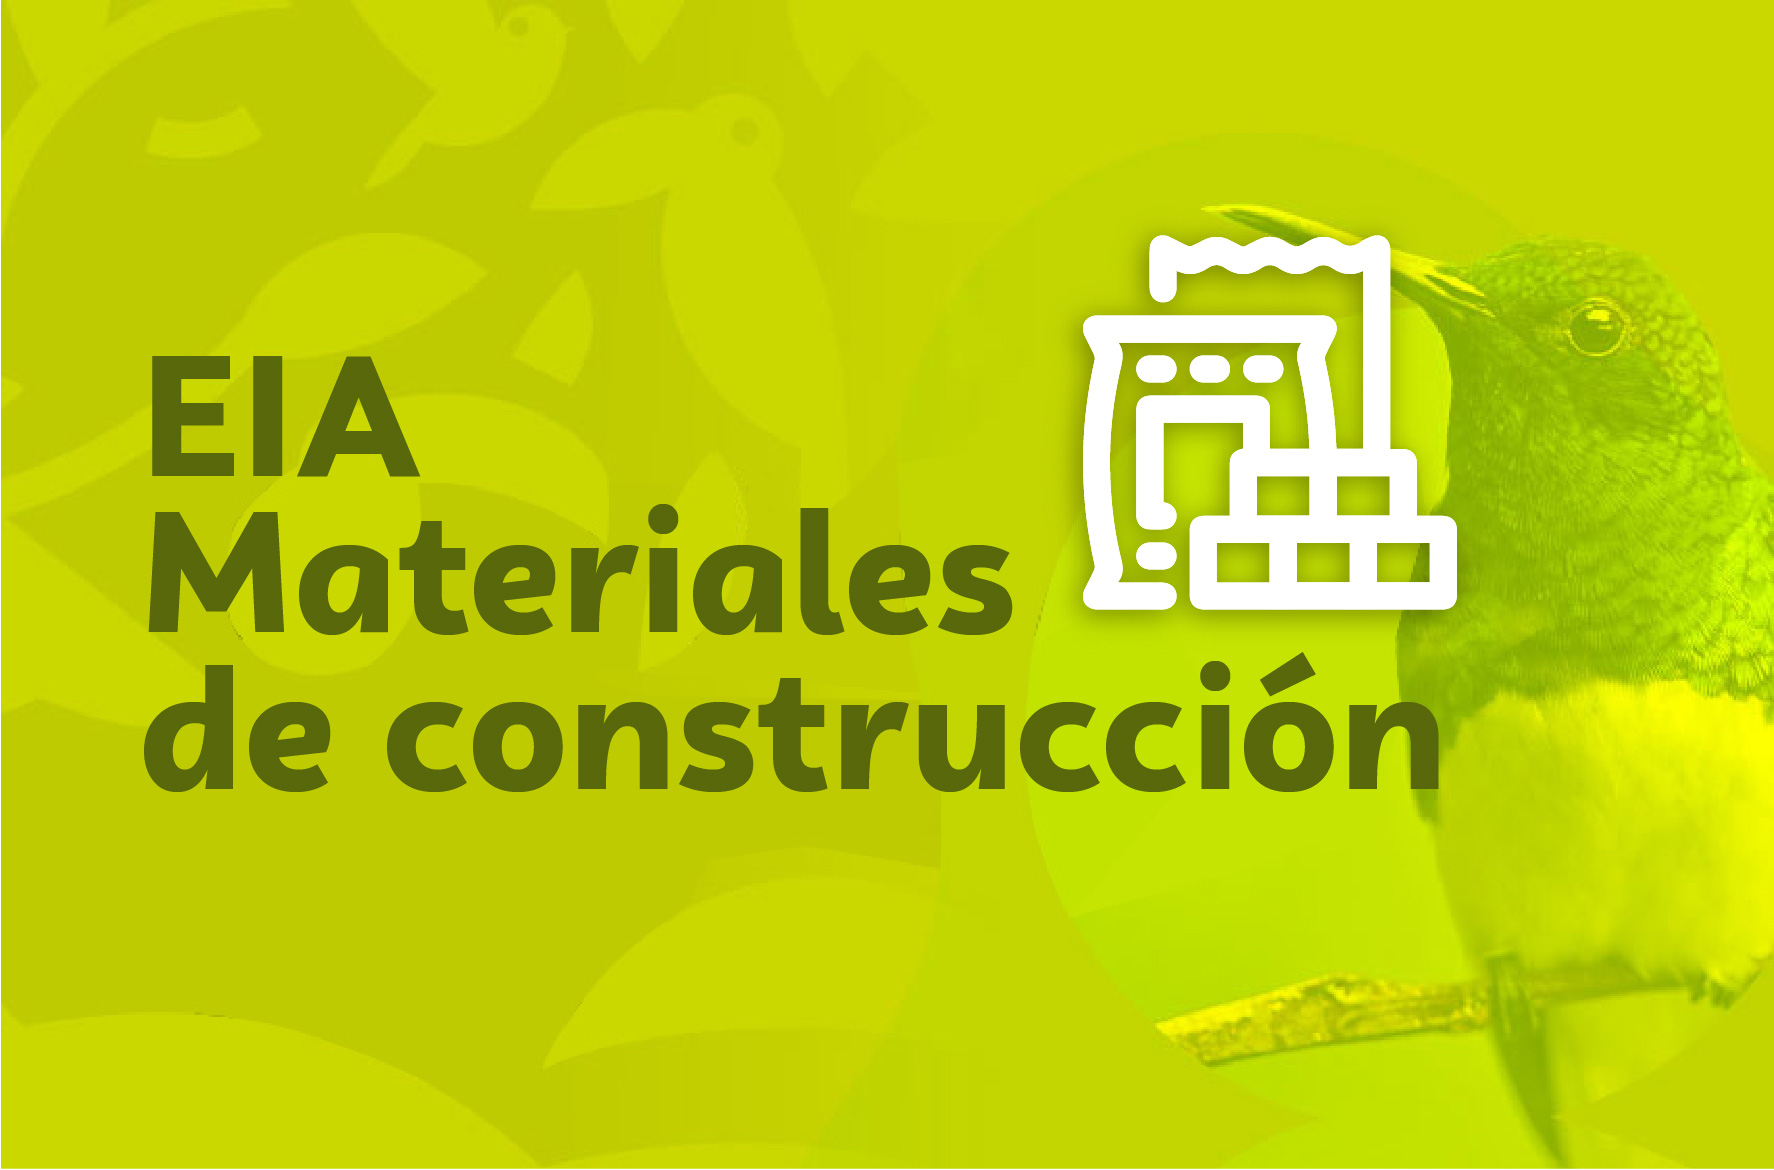 Eia - Materiales de construcción